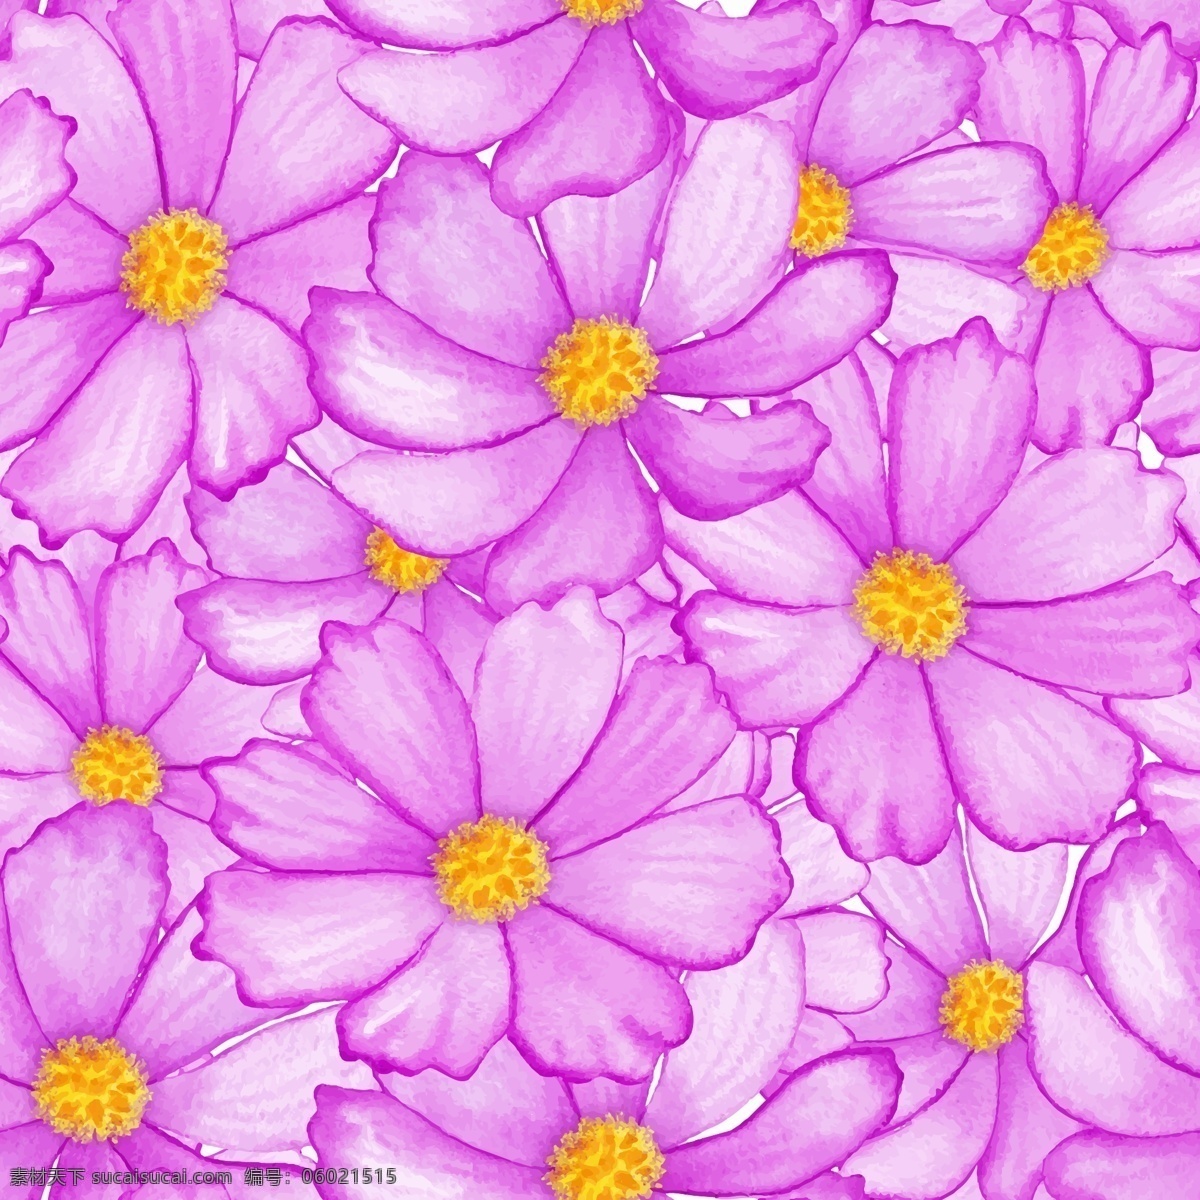 美丽的菊花 植物 美丽 底纹 菊花 紫色